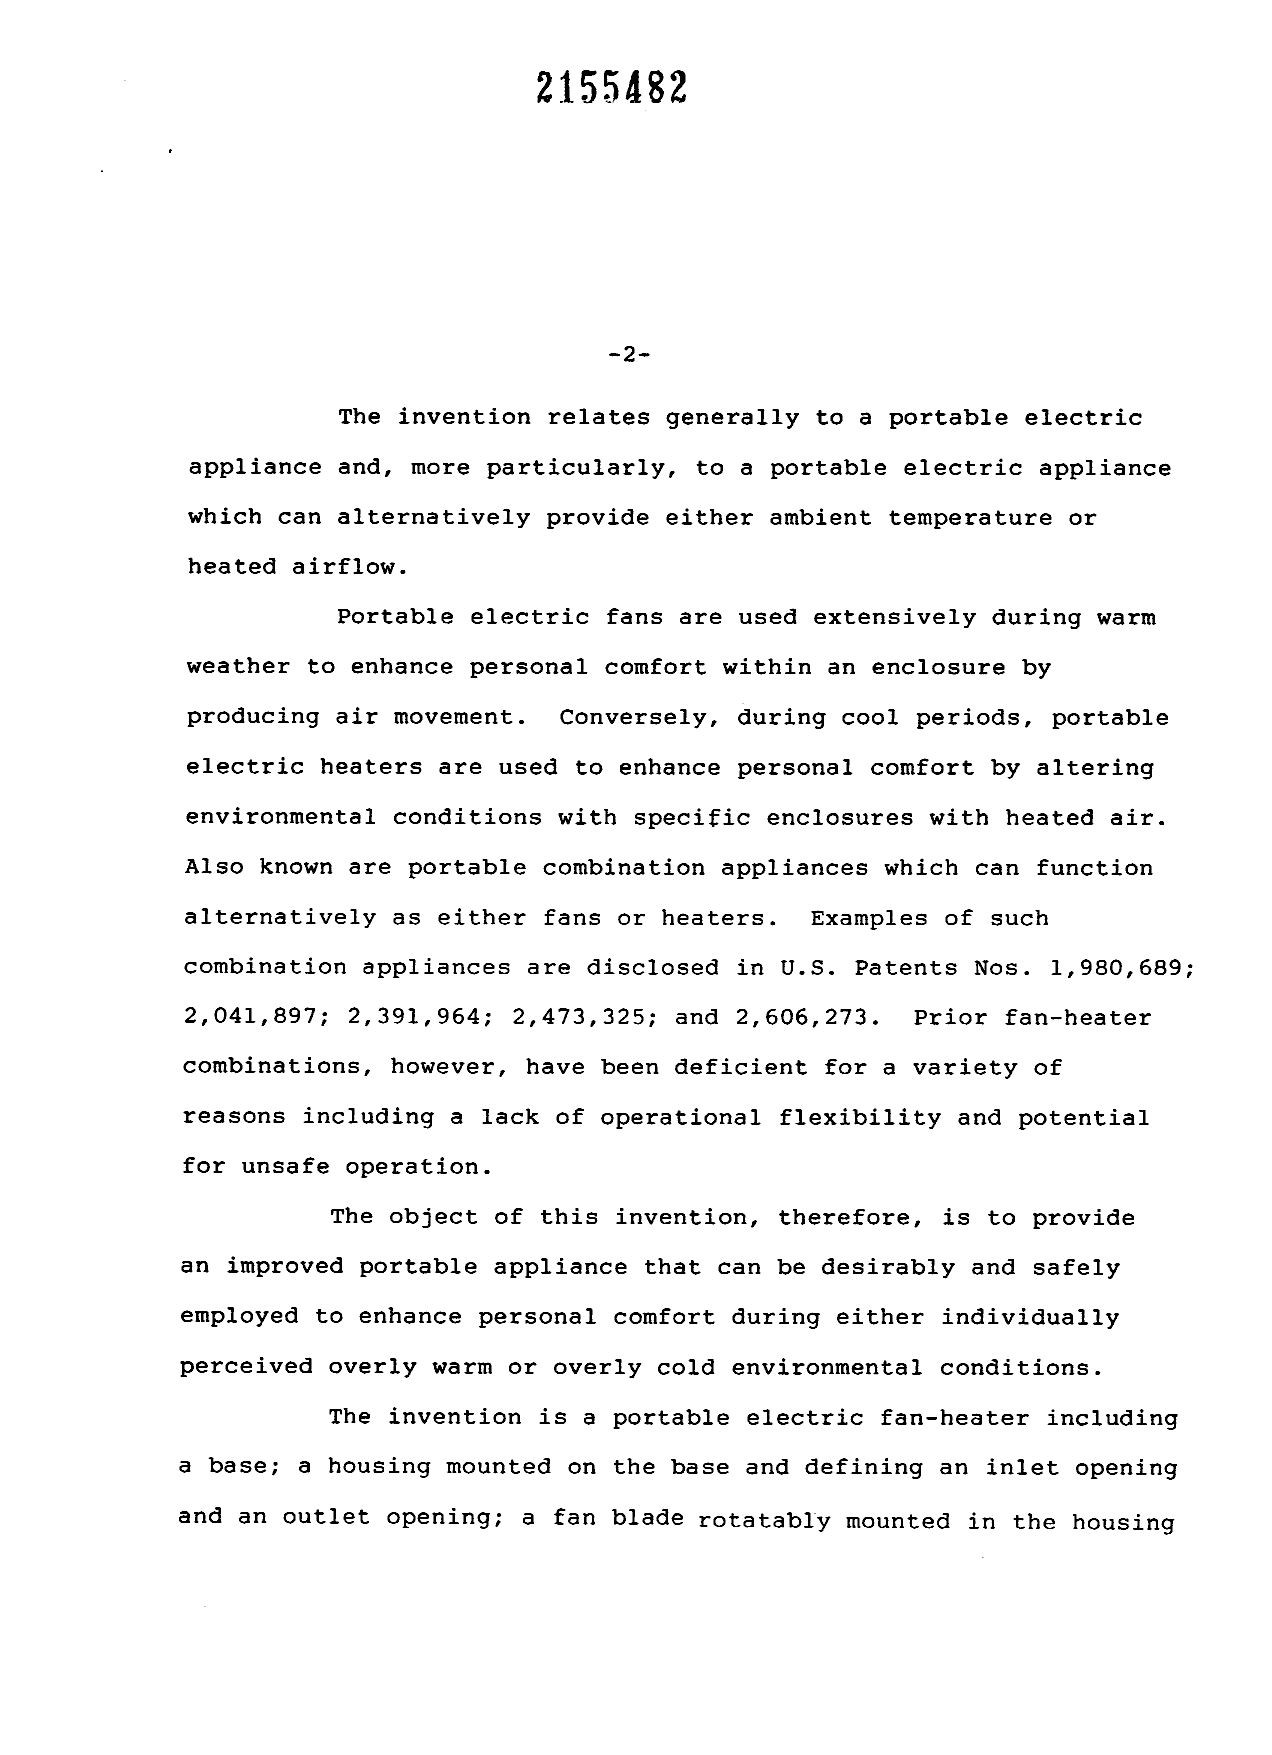 Canadian Patent Document 2155482. Description 19951228. Image 1 of 8